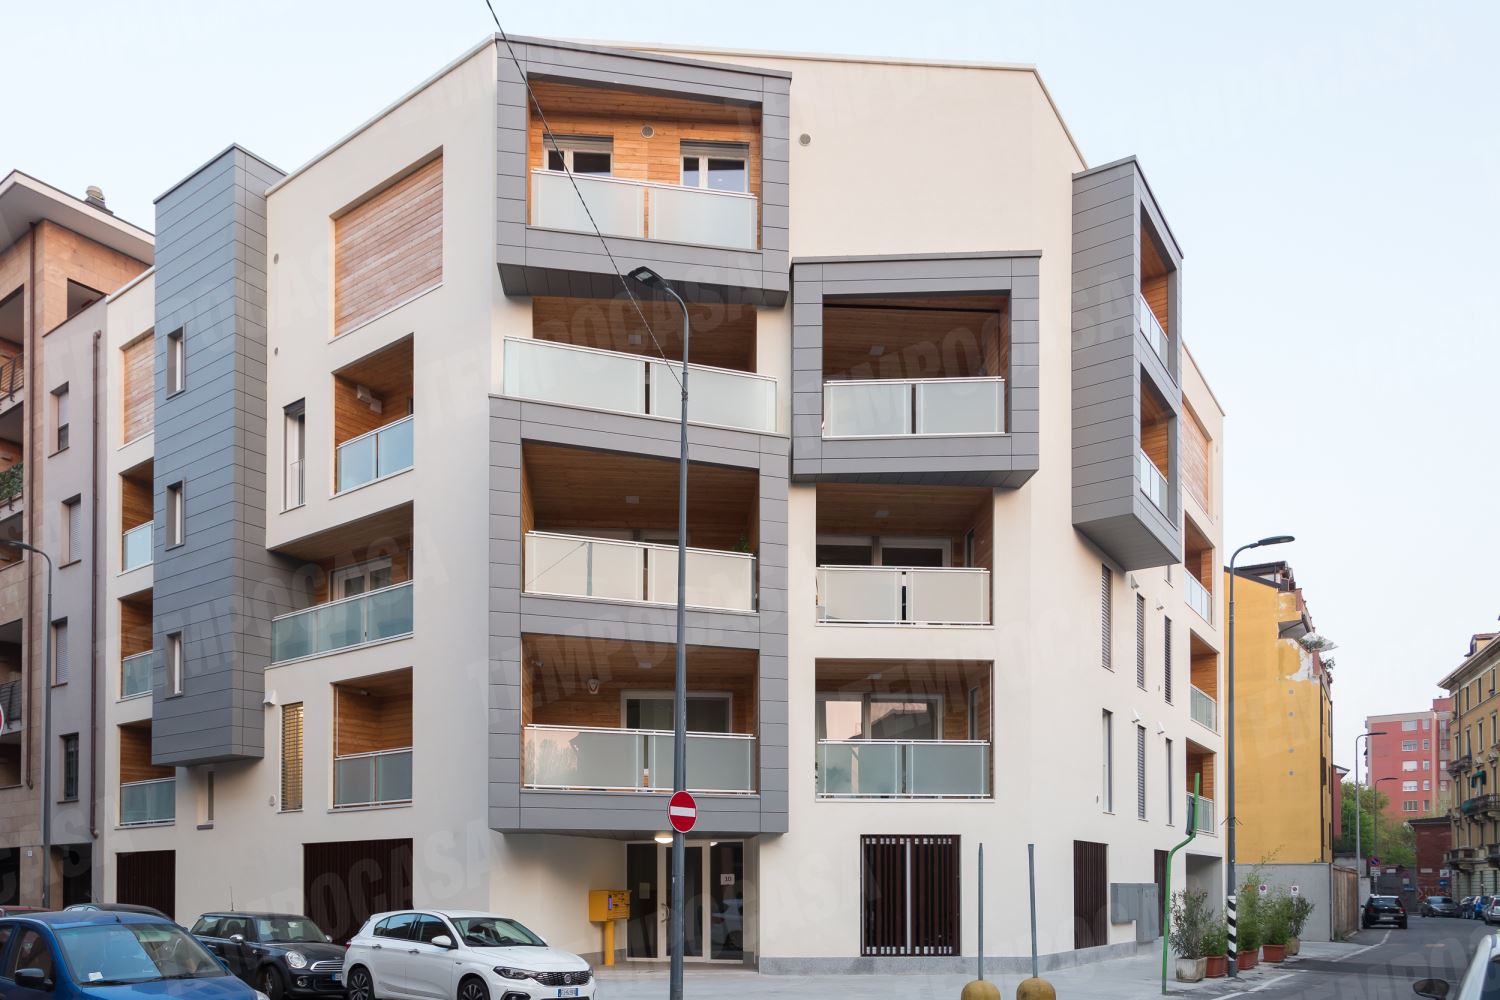 Vendita Appartamenti Case Ville Milano Precotto Tempocasa